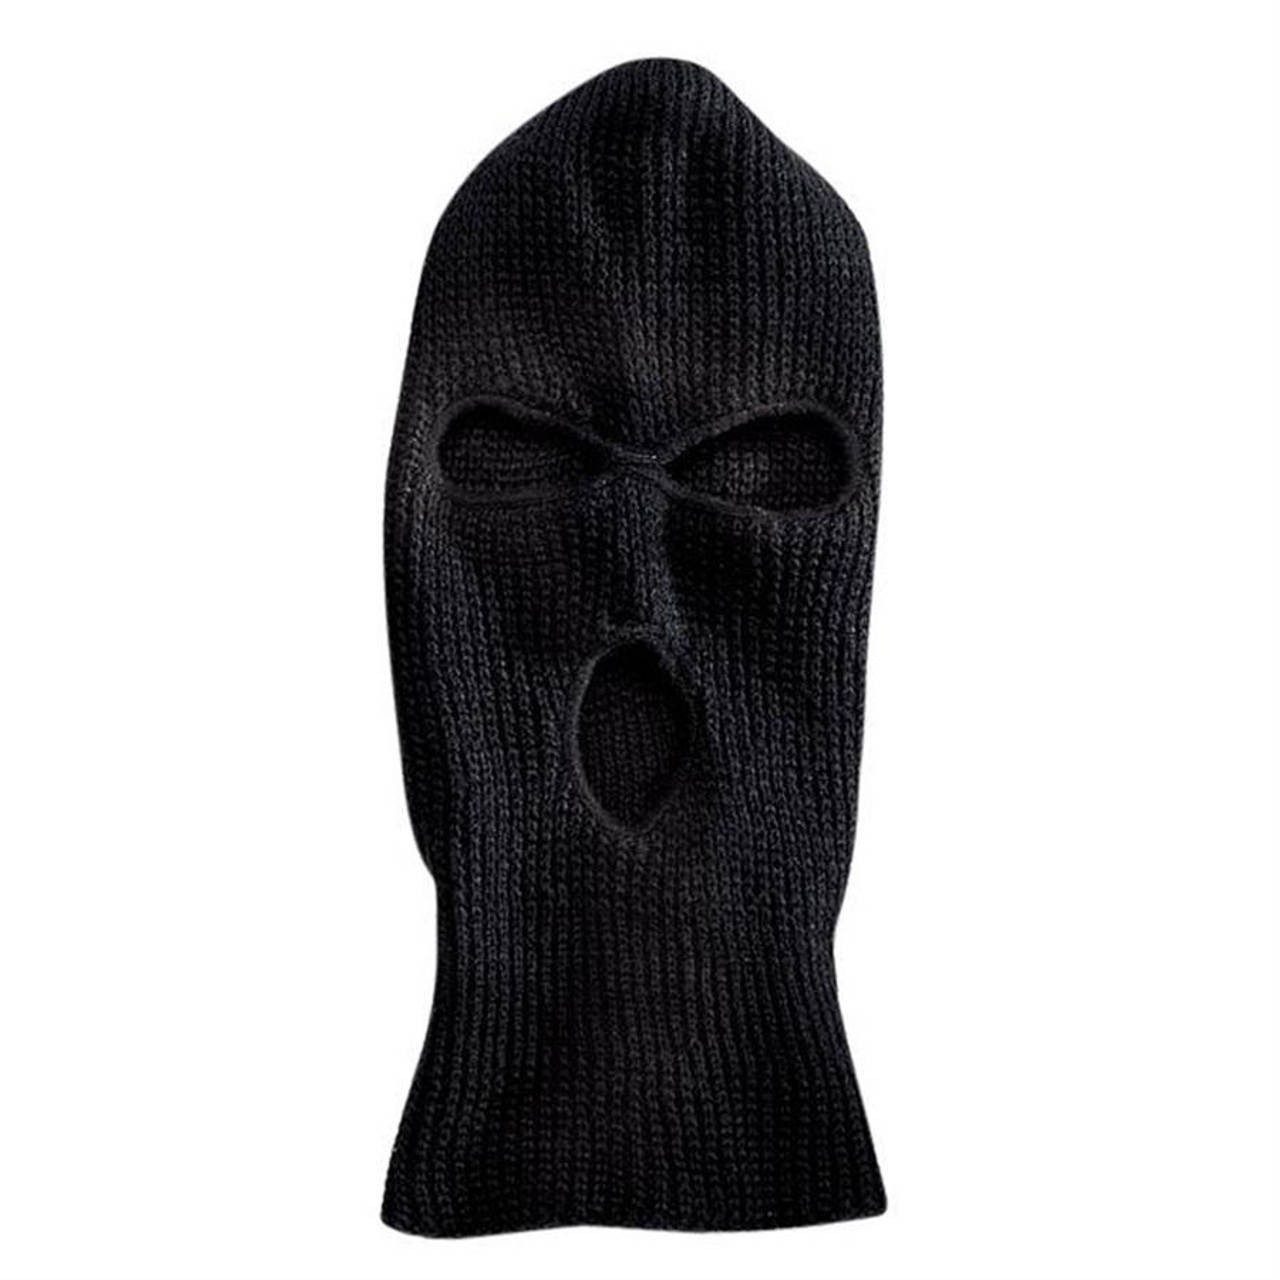 Mantienitial Caldo E Protetto Con Una Maschera Da Sci Nera Sfondo